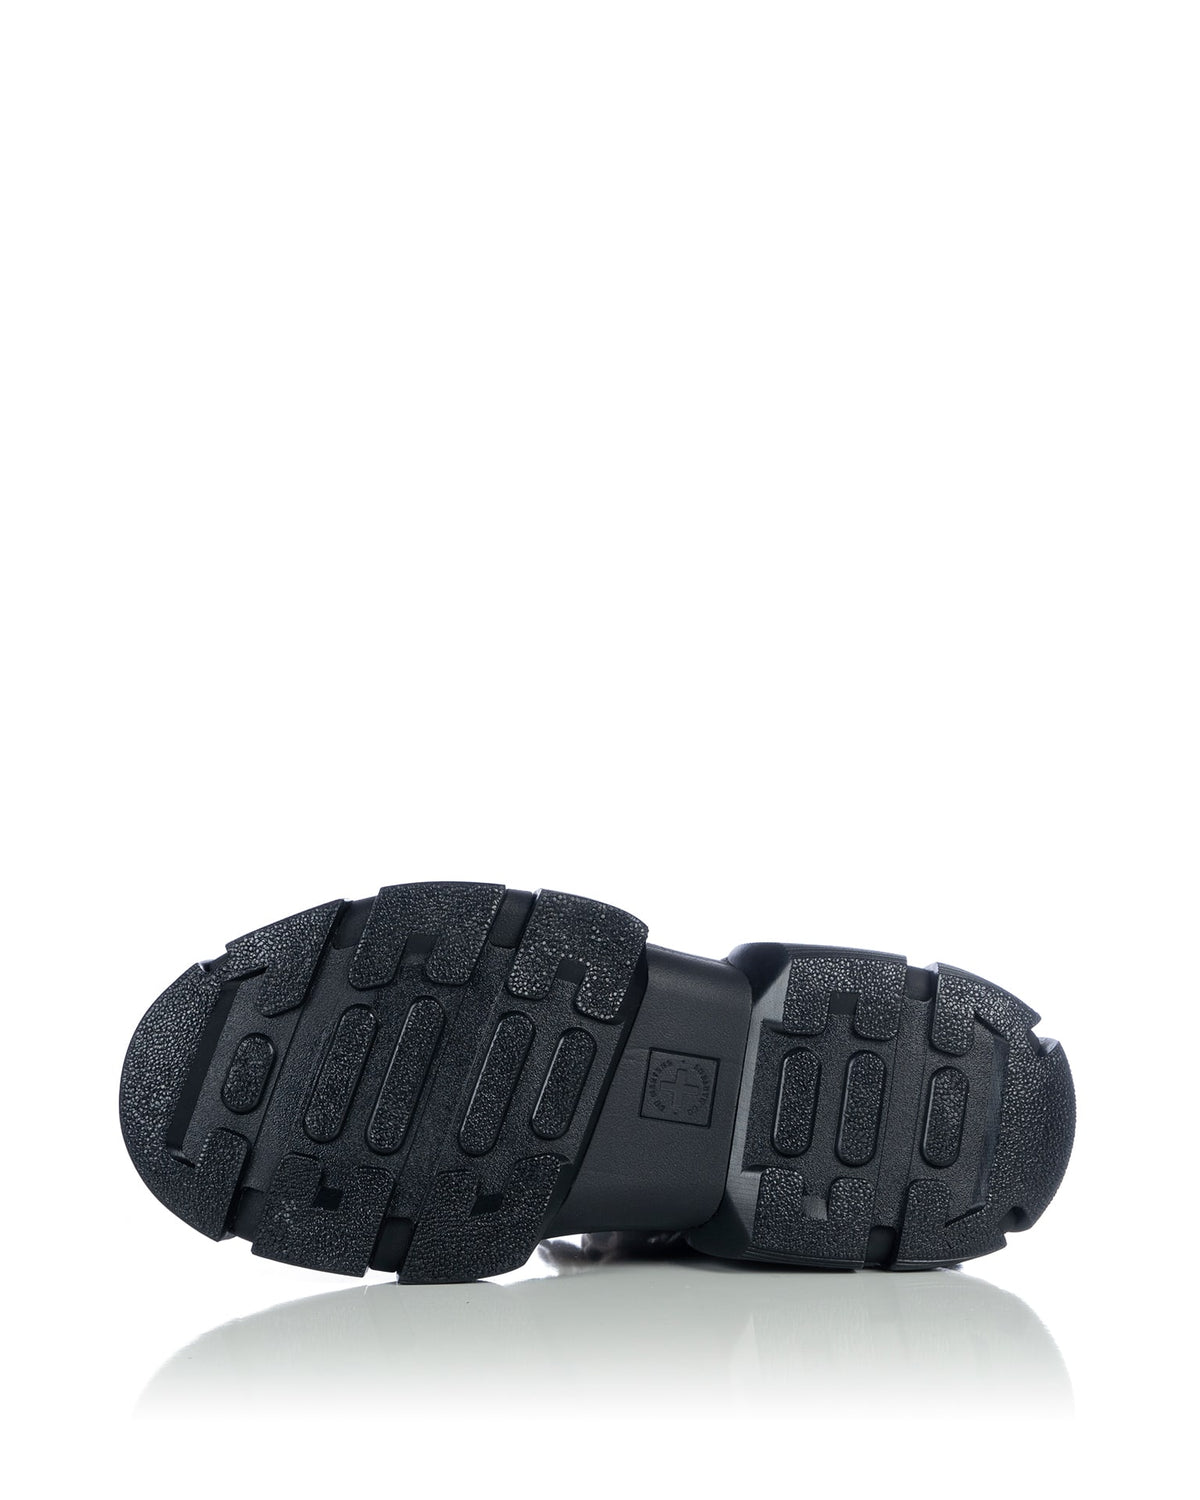 Rick Owens | x Dr. Martens 1460 Jumbo Lace Boots Black - Concrete